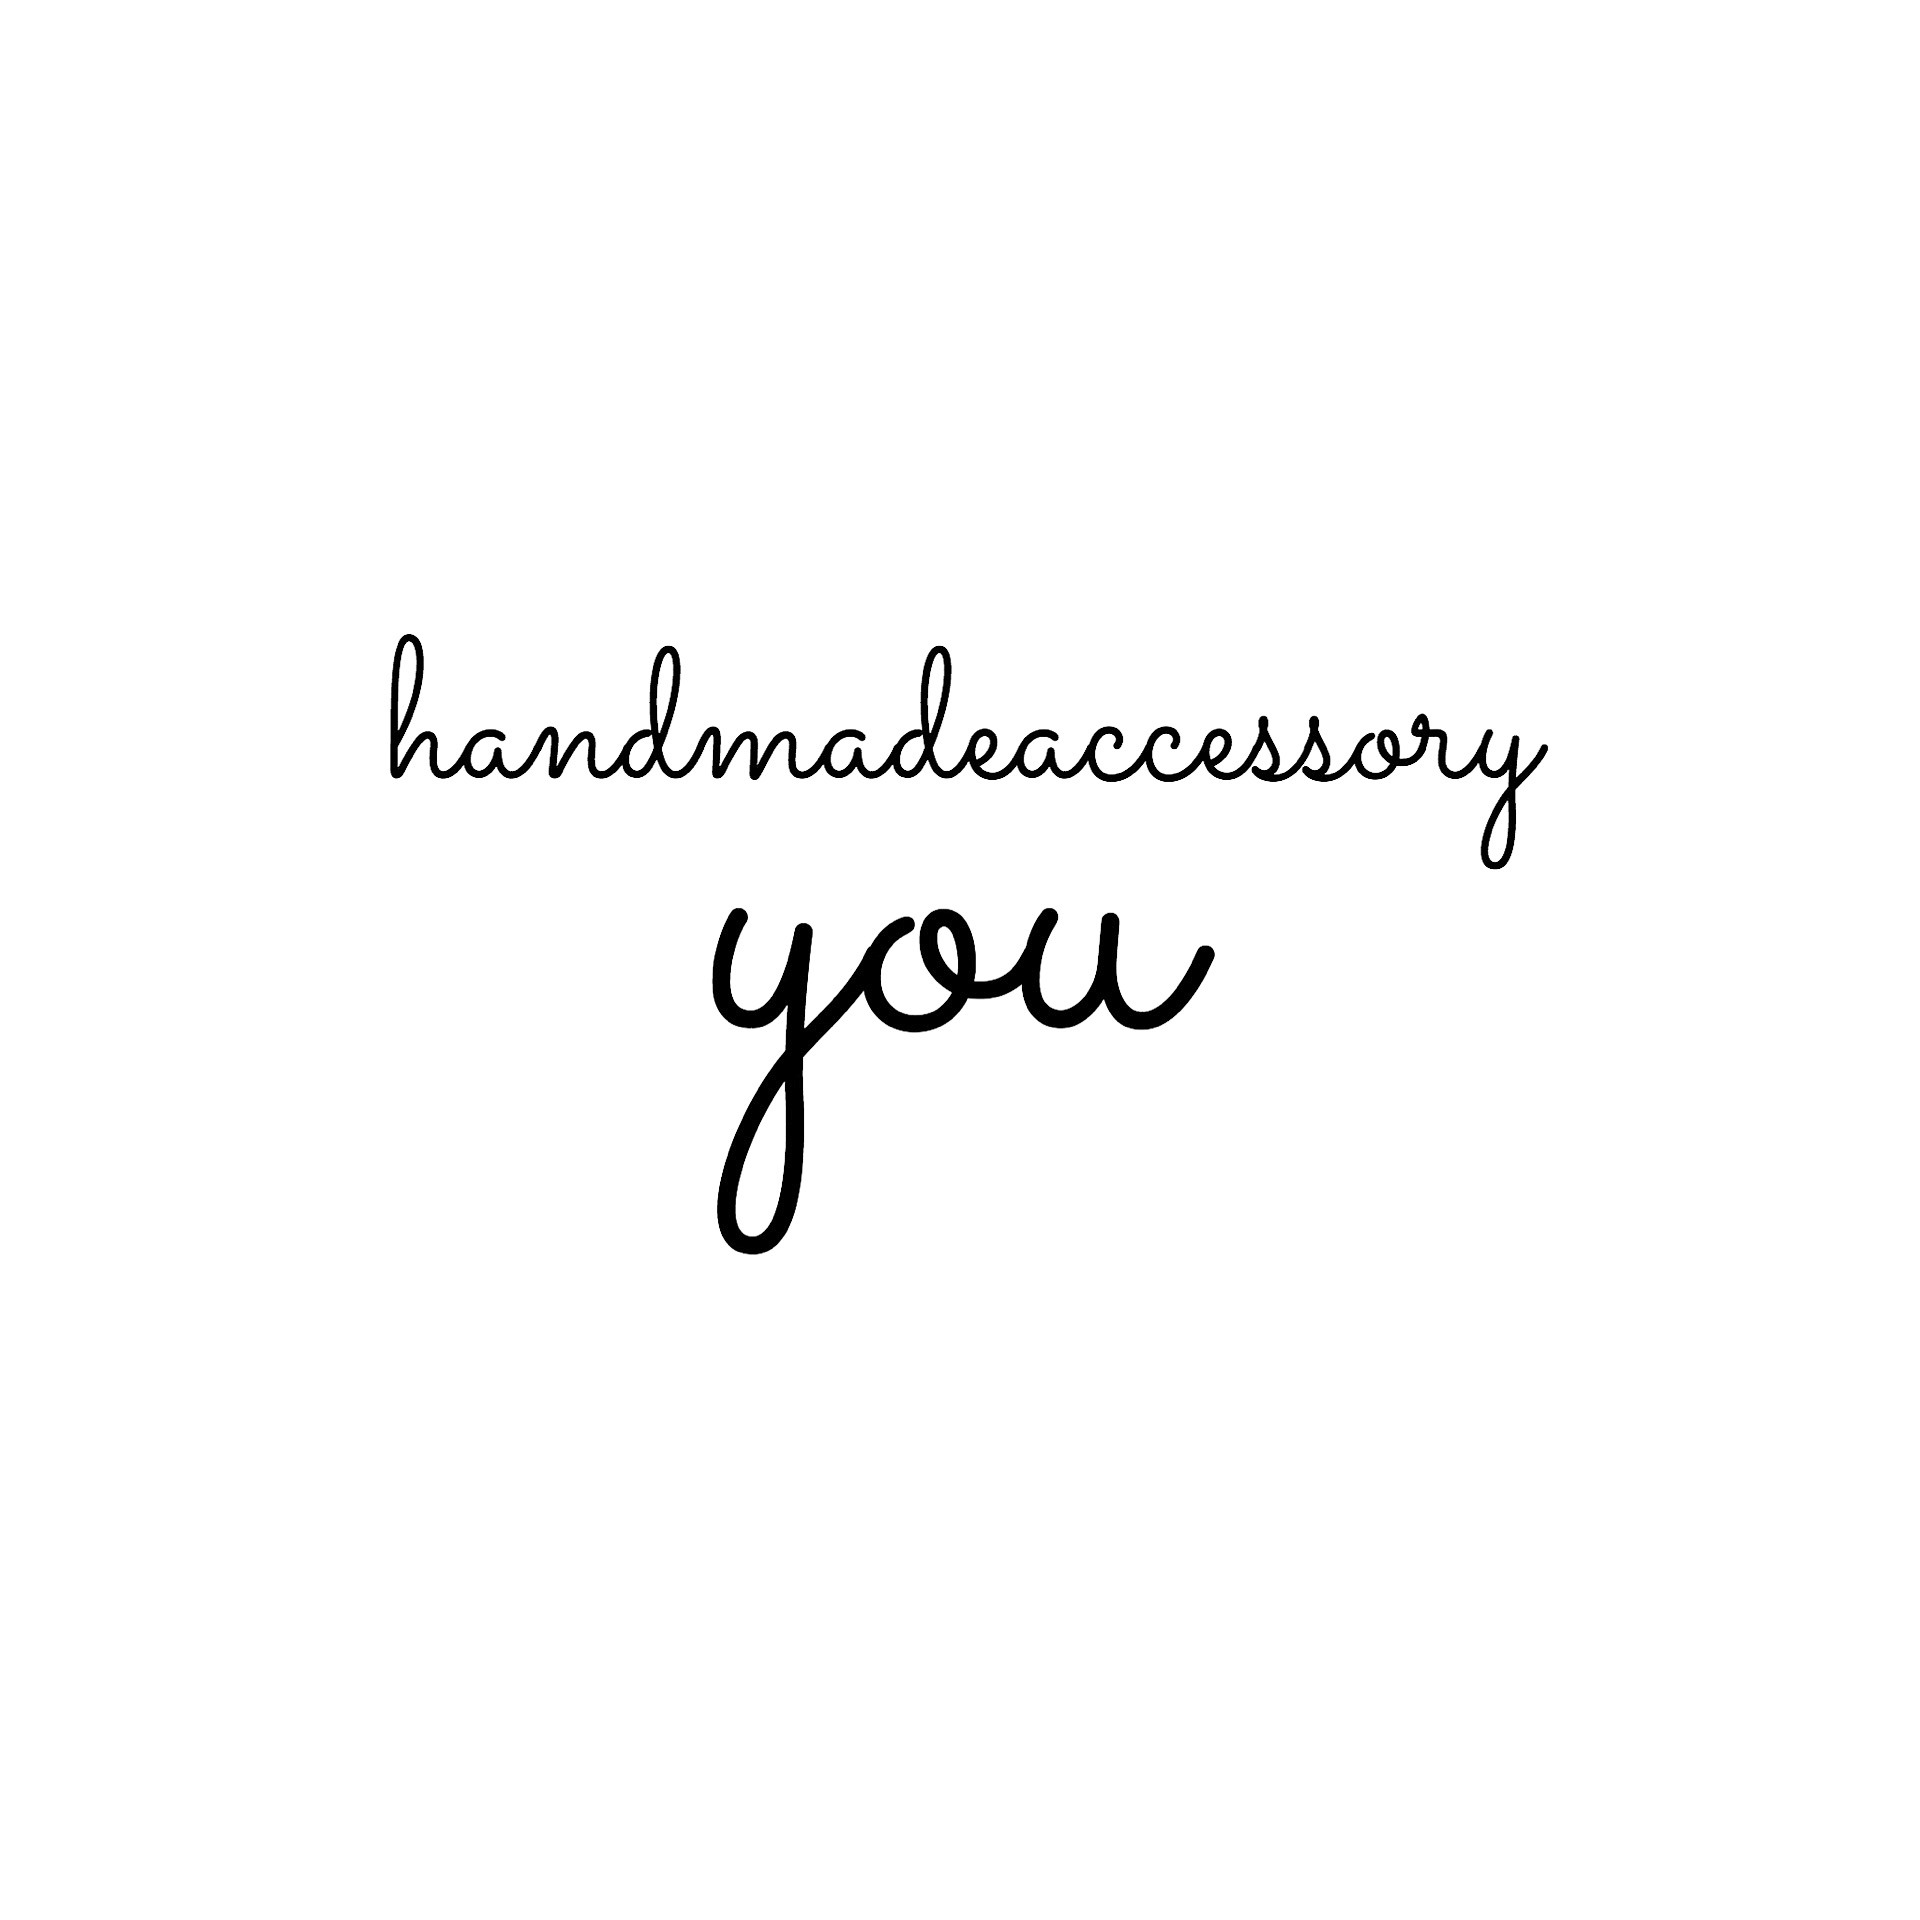 handmade accessory you